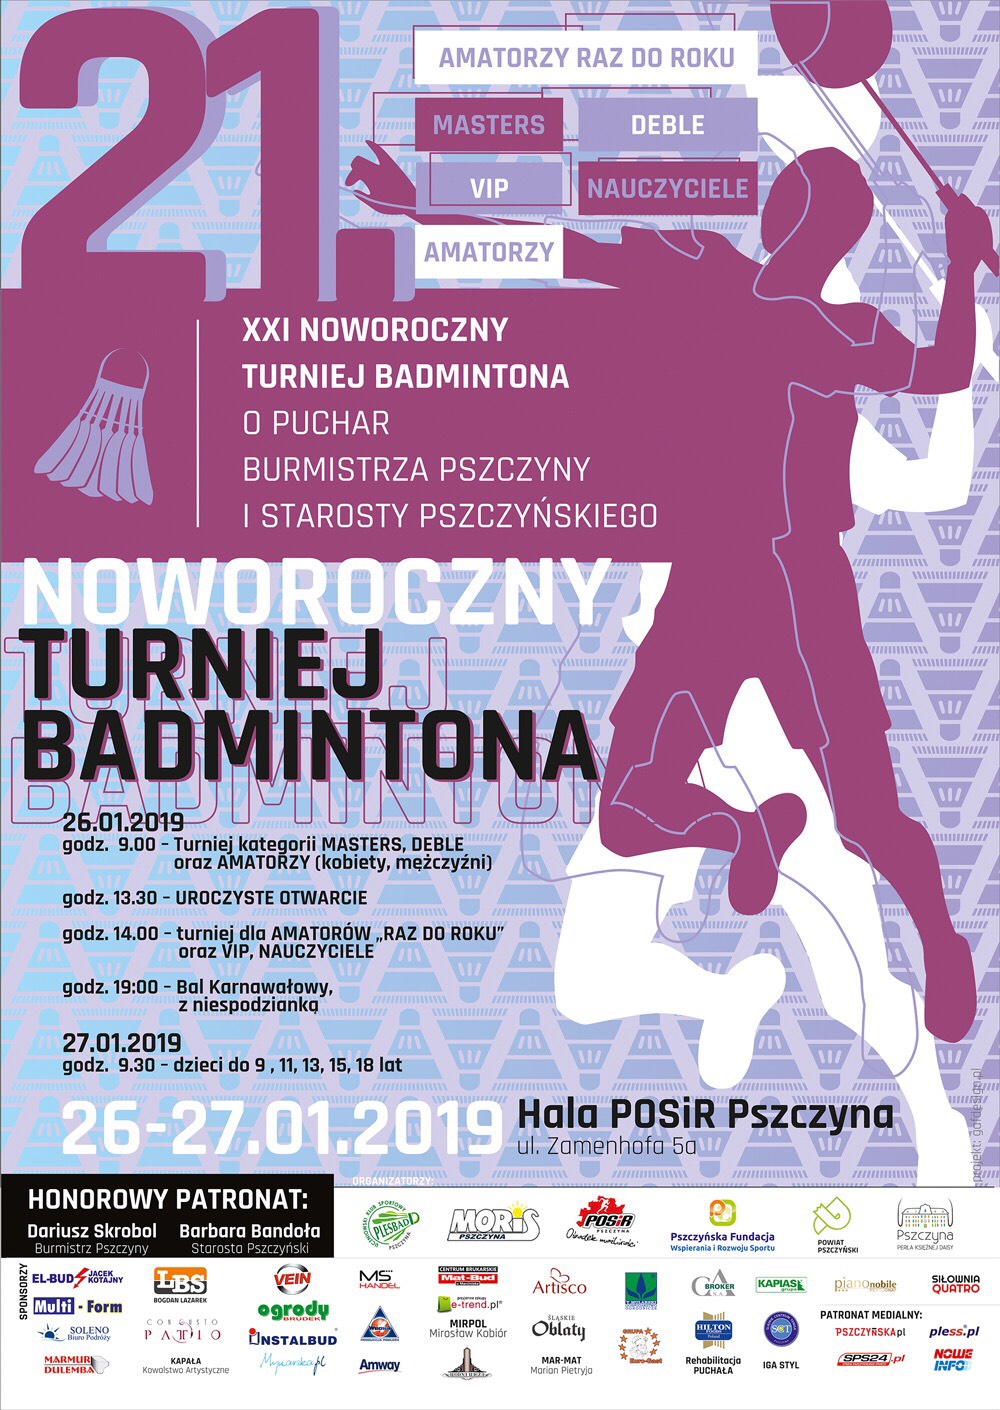 XXI Noworoczny Turniej Badmintona